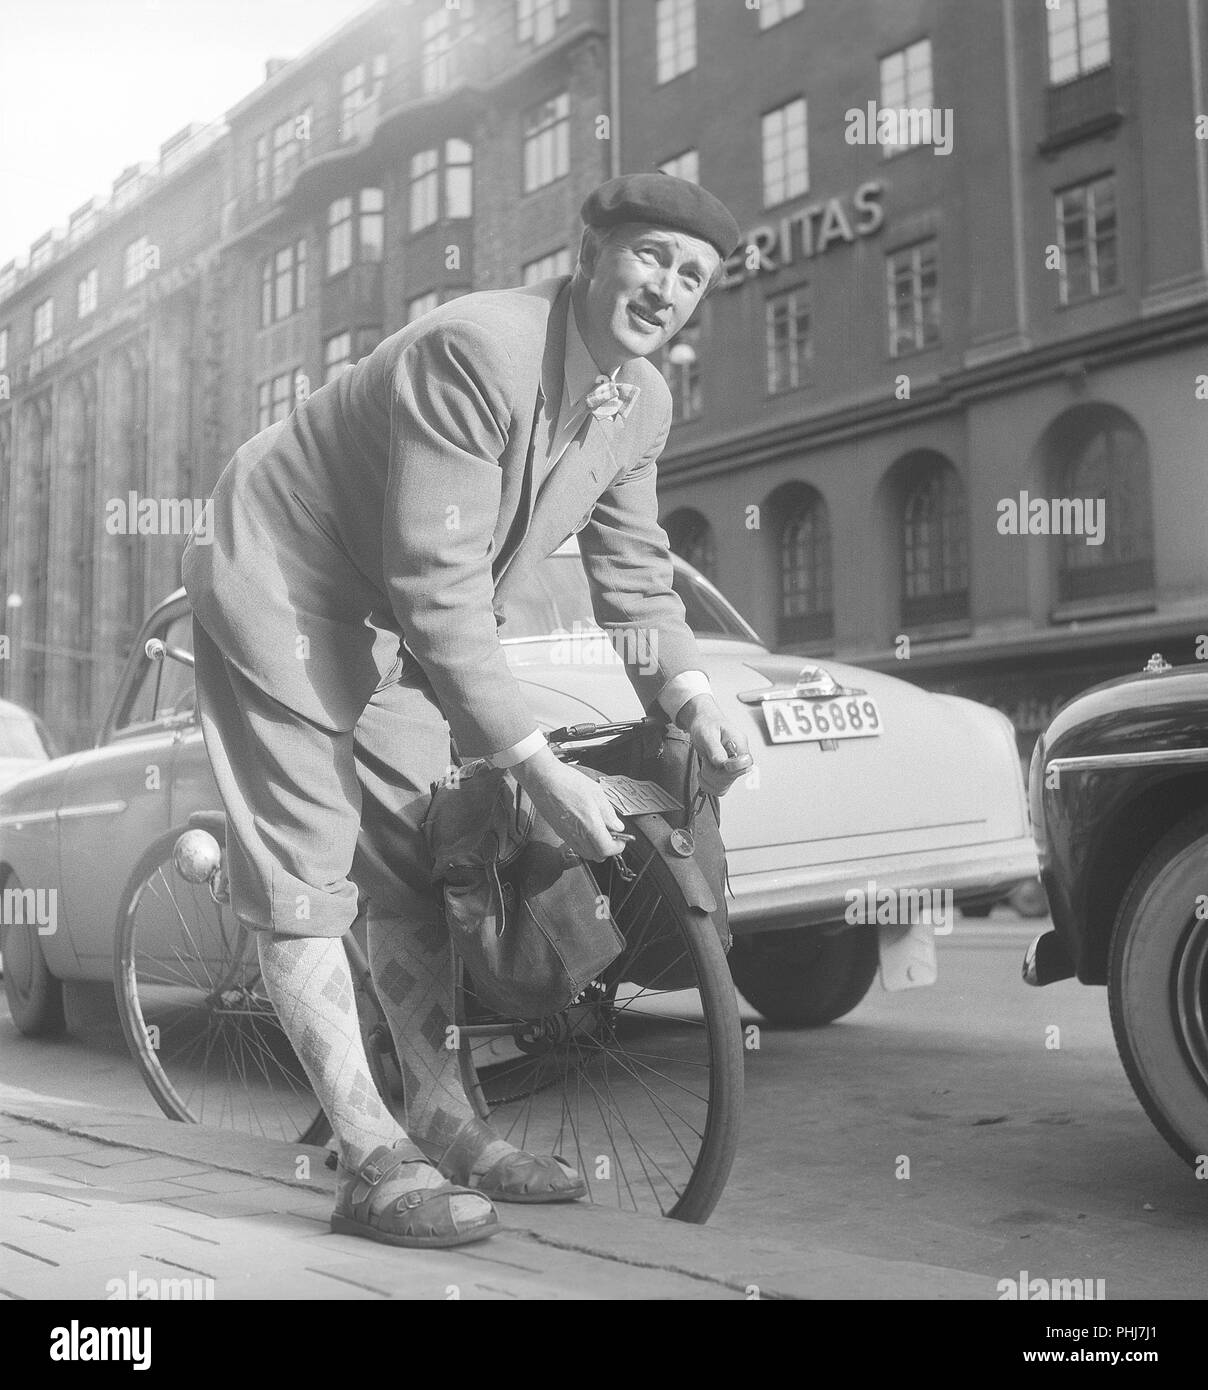 1950s homme avec son vélo. Un homme à l'intérieur a garé sa bicyclette et l'a équilibrée sur le trottoir. Il met une chaîne autour de la roue arrière, l'invalidant d'être volé. Notez le signe d'enregistrement sur la bicyclette qui était un élément obligatoire à ce moment-là. Suède 1954. Photo Kristoffersson réf. BP57-5 Banque D'Images